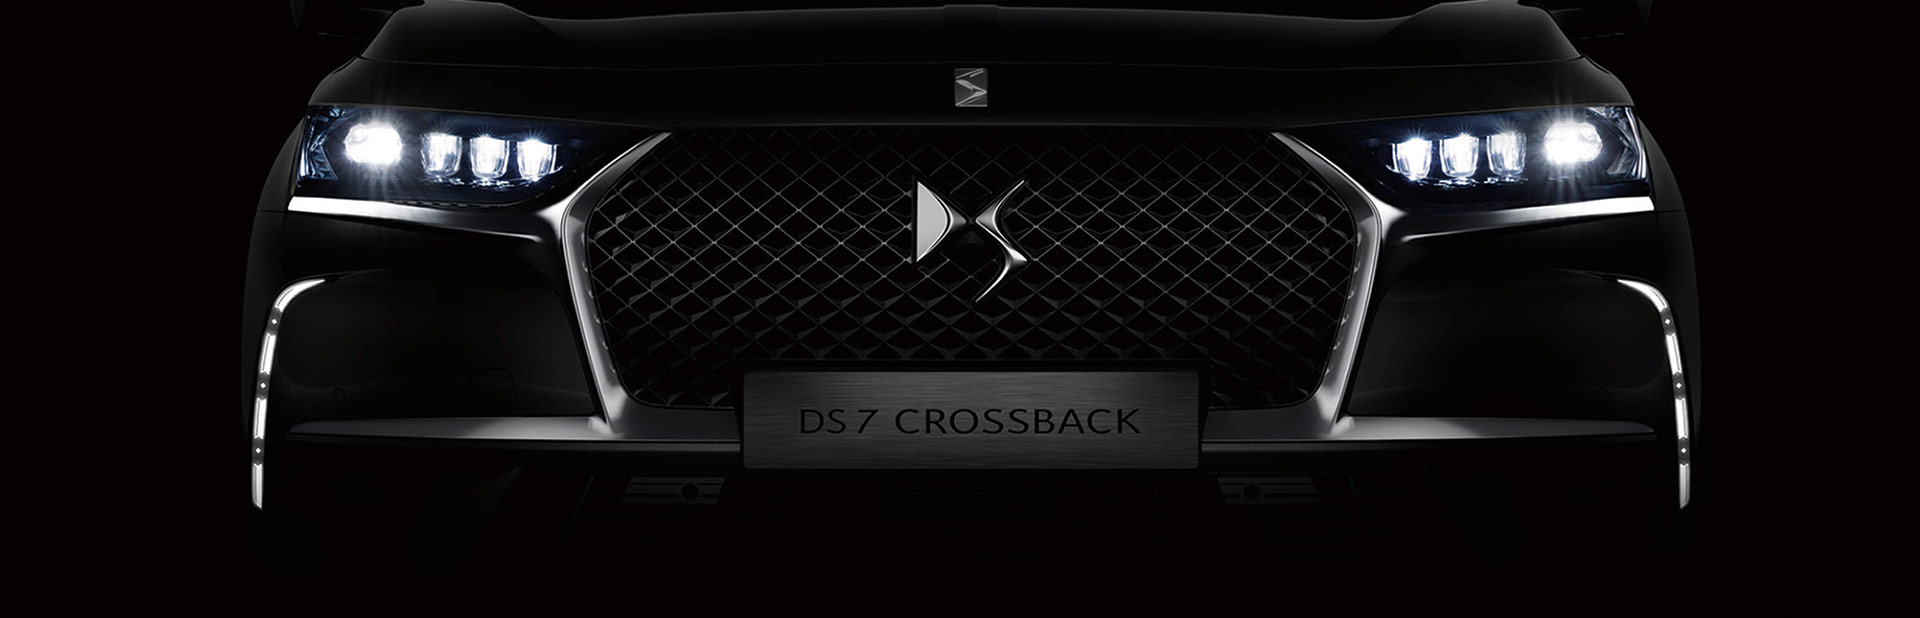 Bestzeit - Referenzkunde DS Automobiles - DS 7 Crossback Launch-Events